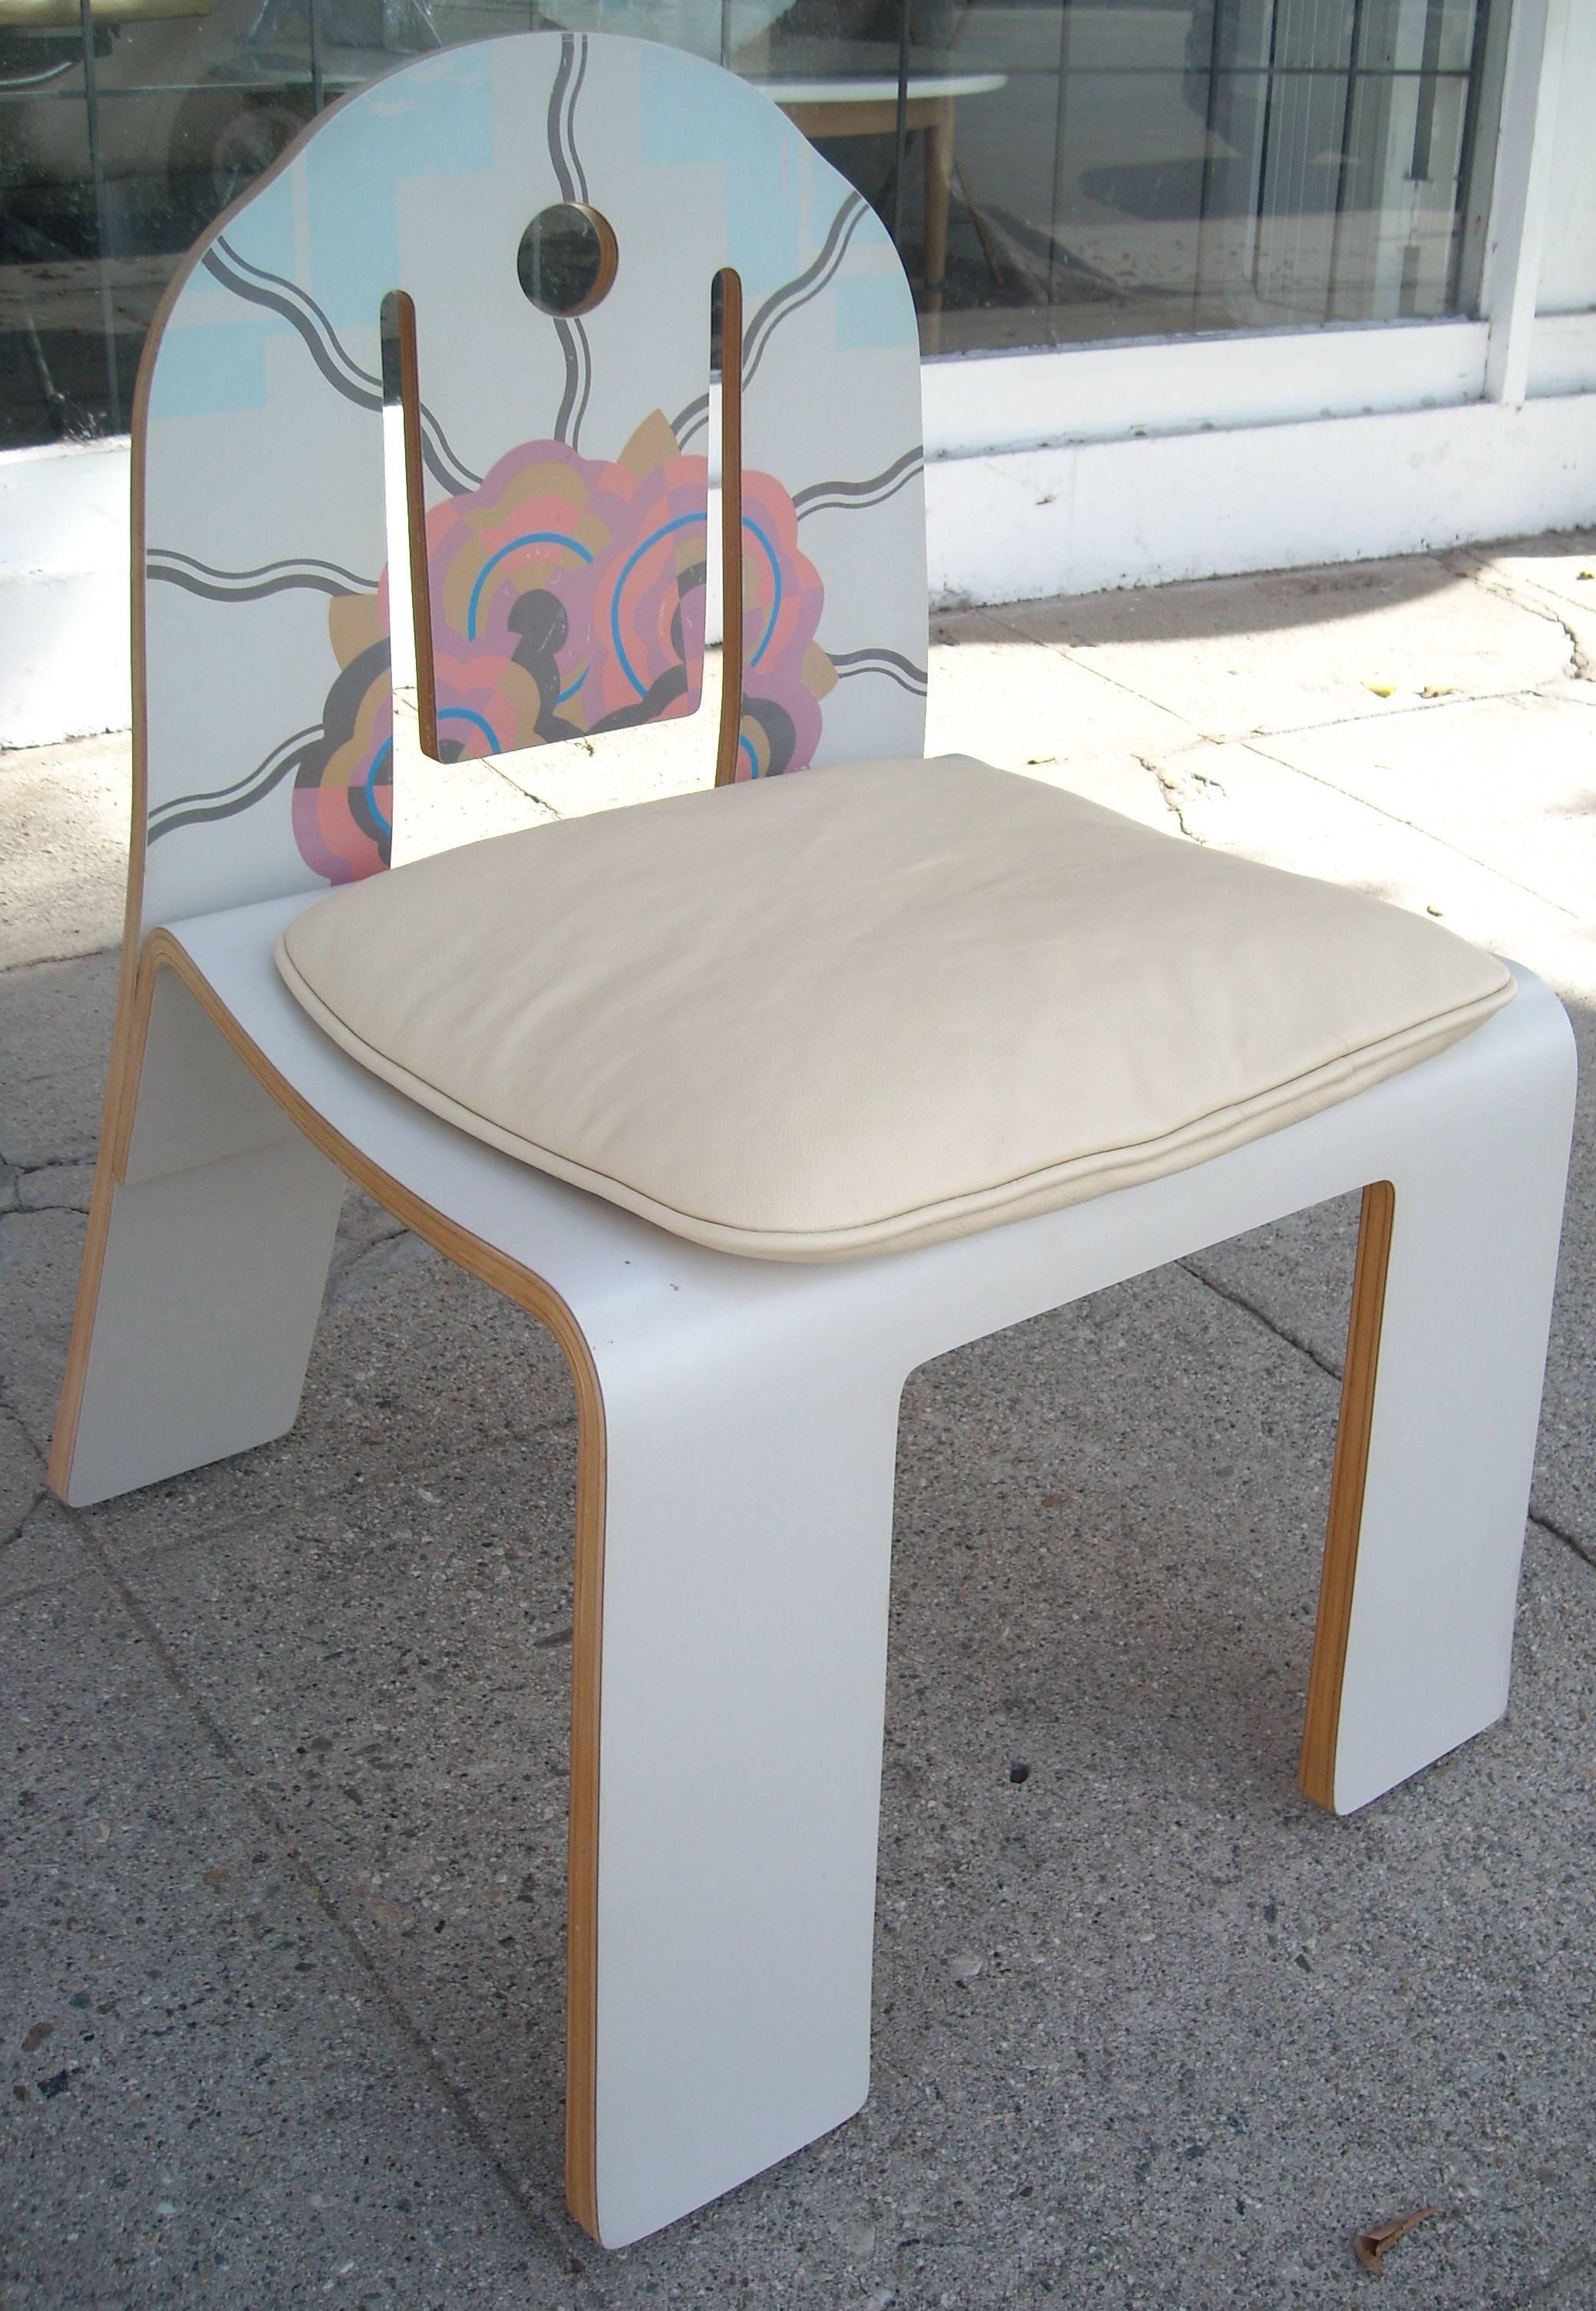 Post-Modern Robert Venturi Art Deco Chair 665 for Knoll, Bentwood Laminate